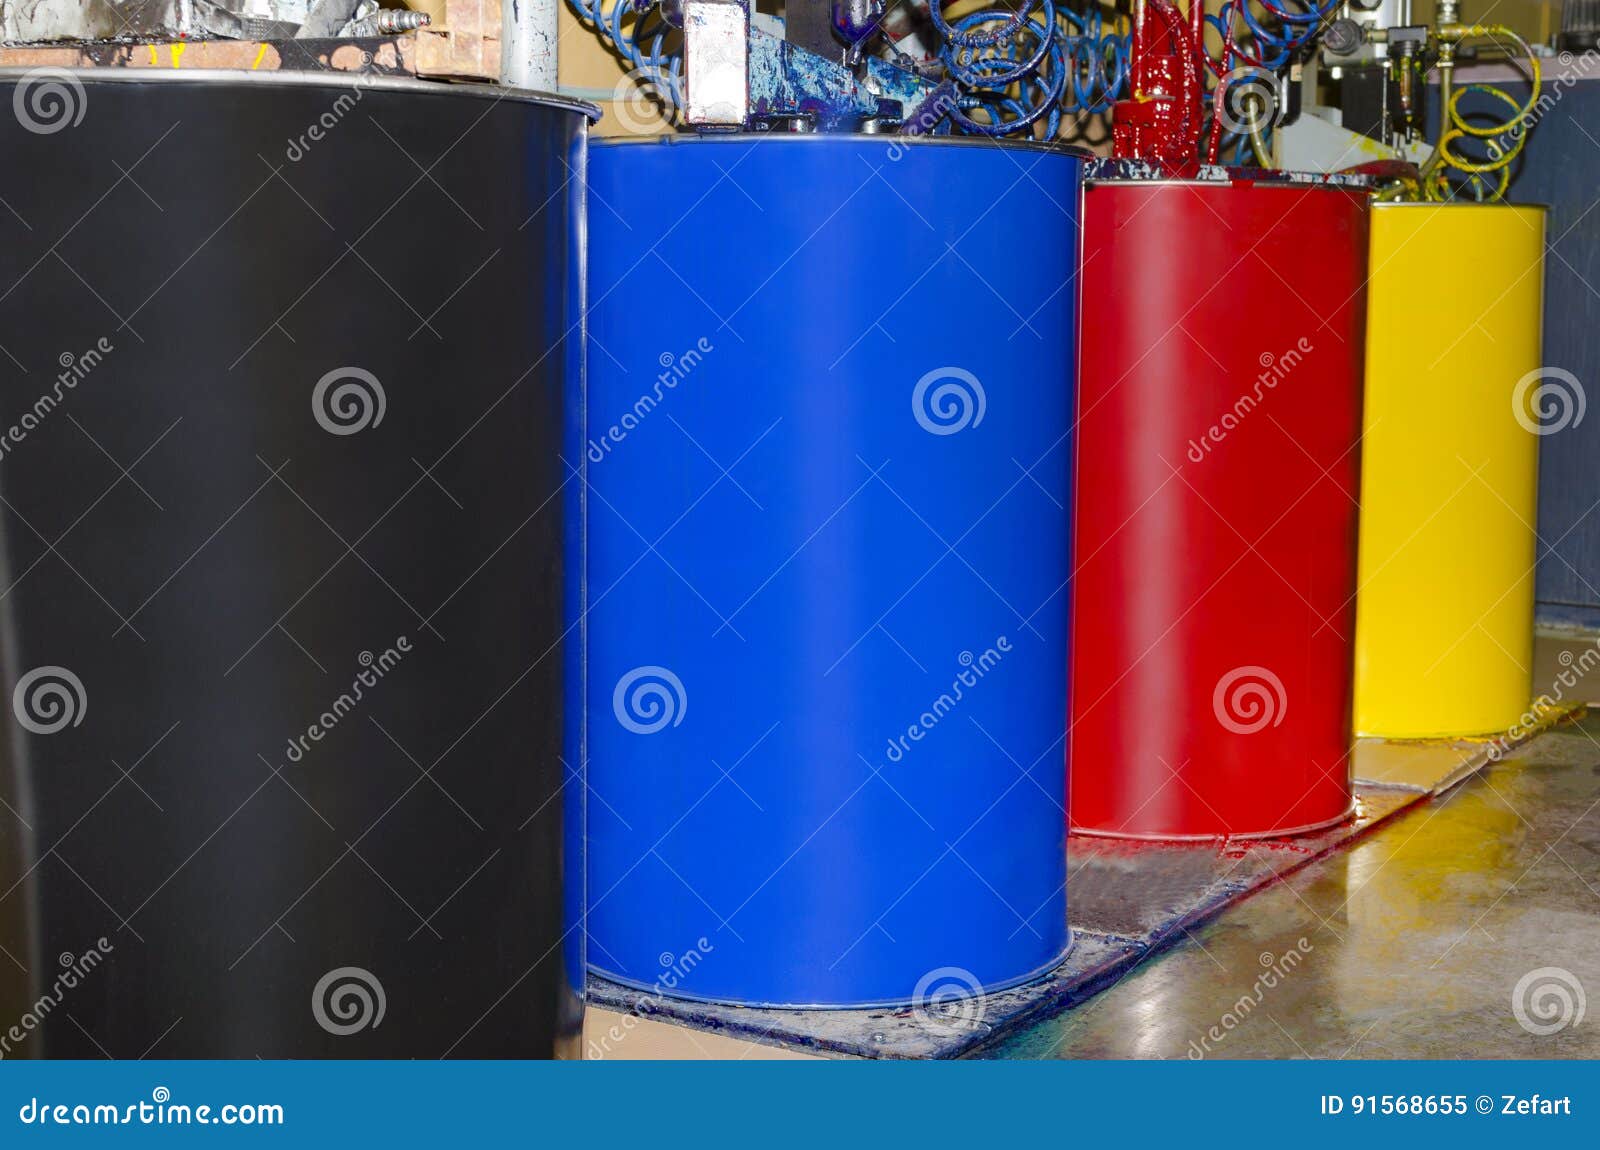 cmyk color loading unit barrels